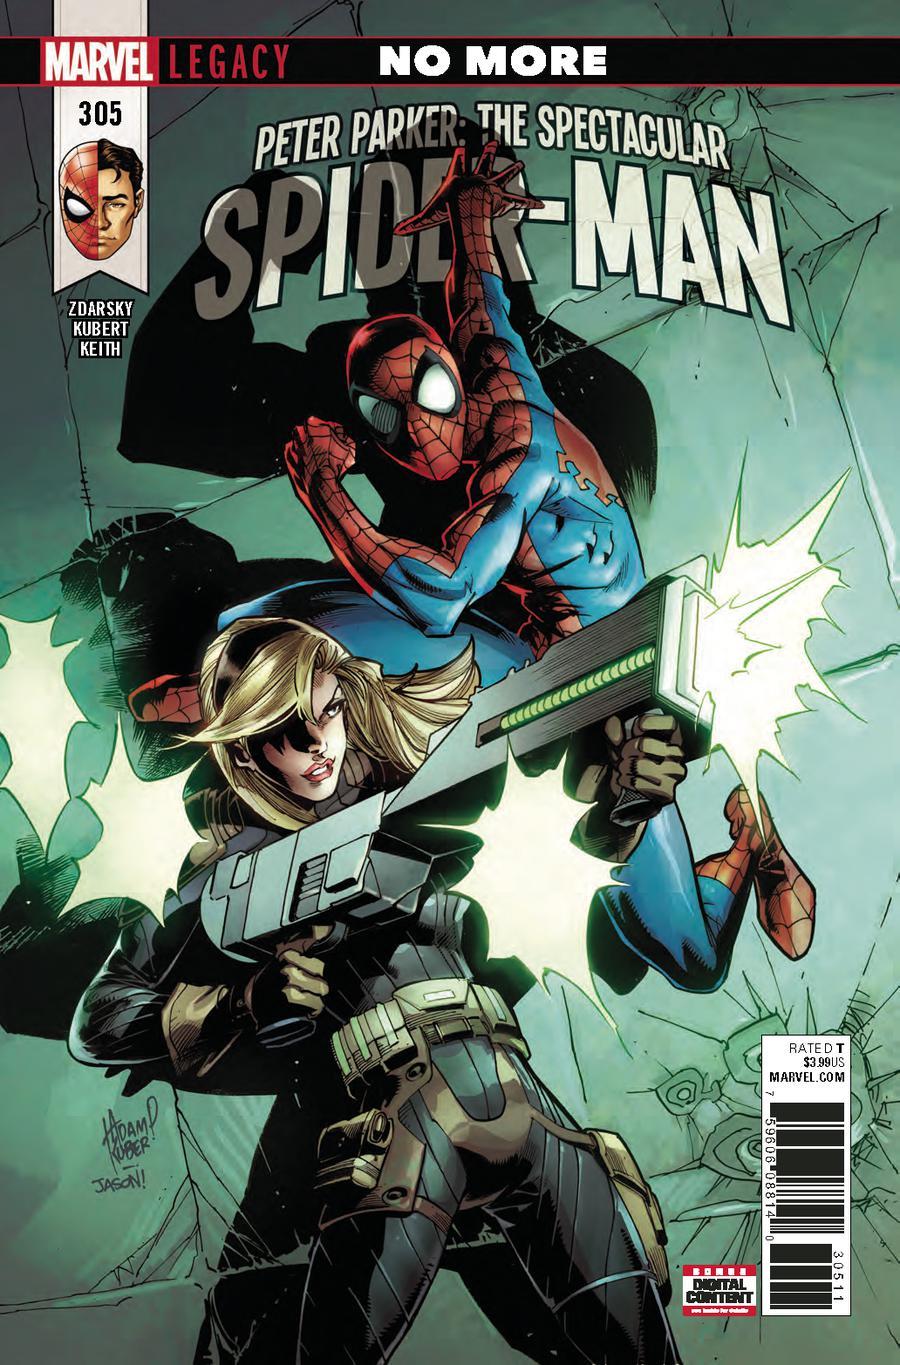 Peter Parker Spectacular Spider-Man Vol. 1 #305